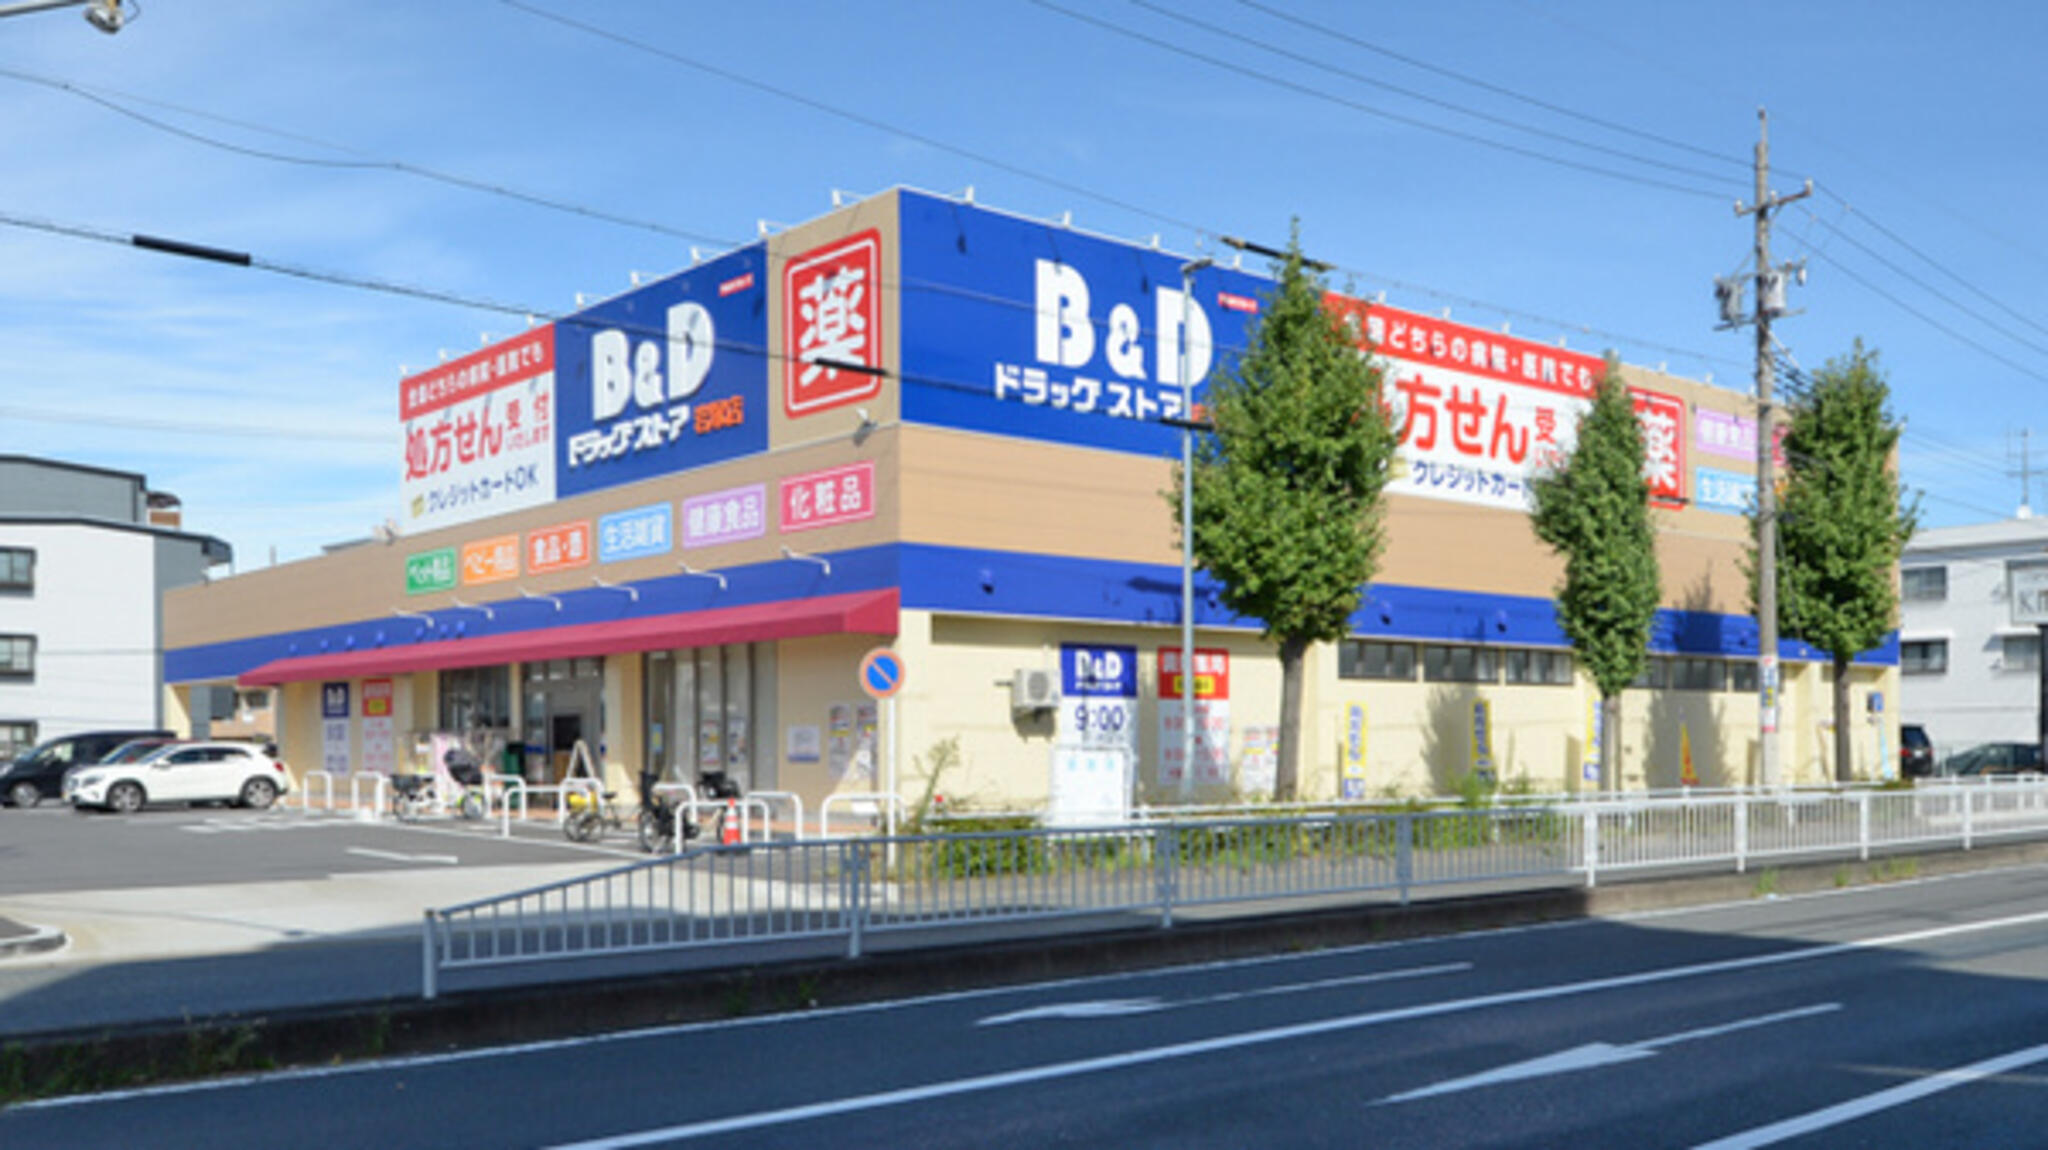 ツルハドラッグ調剤 B&D調剤薬局 岩塚店の代表写真1